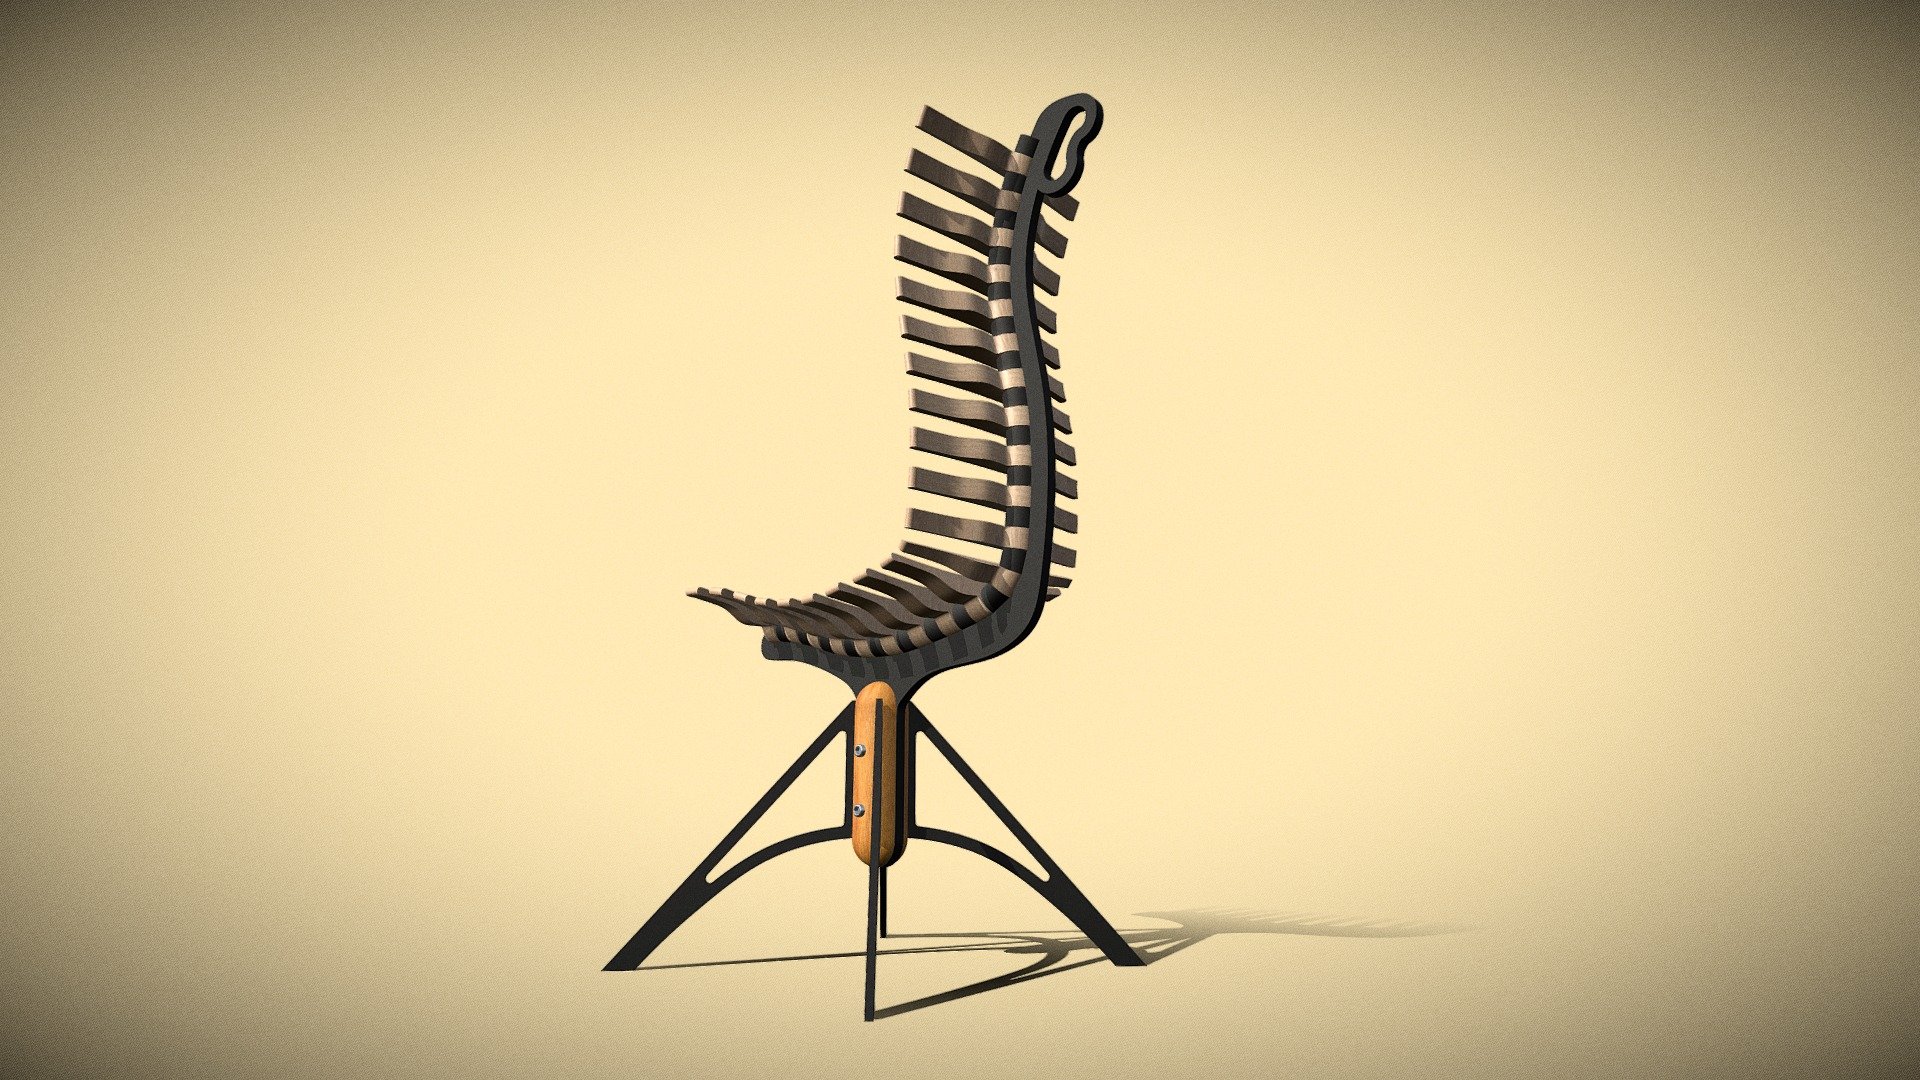 "Move it" chair - by Semen Lavdanskiy